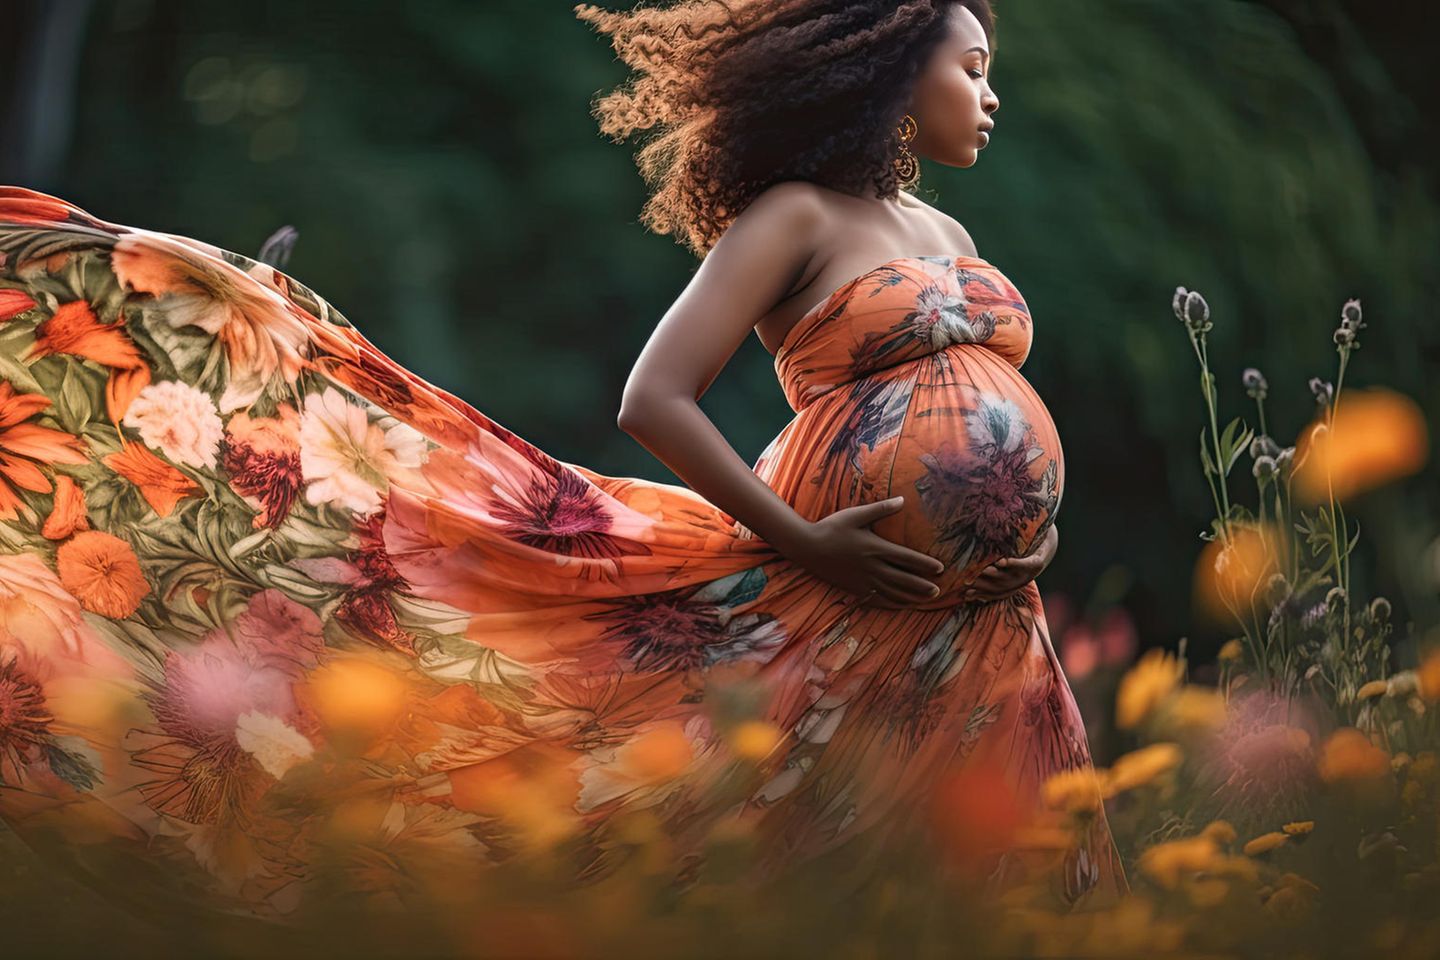 Schwangere auf Blumenwiese Natur beeinflusst Geburtsgewicht